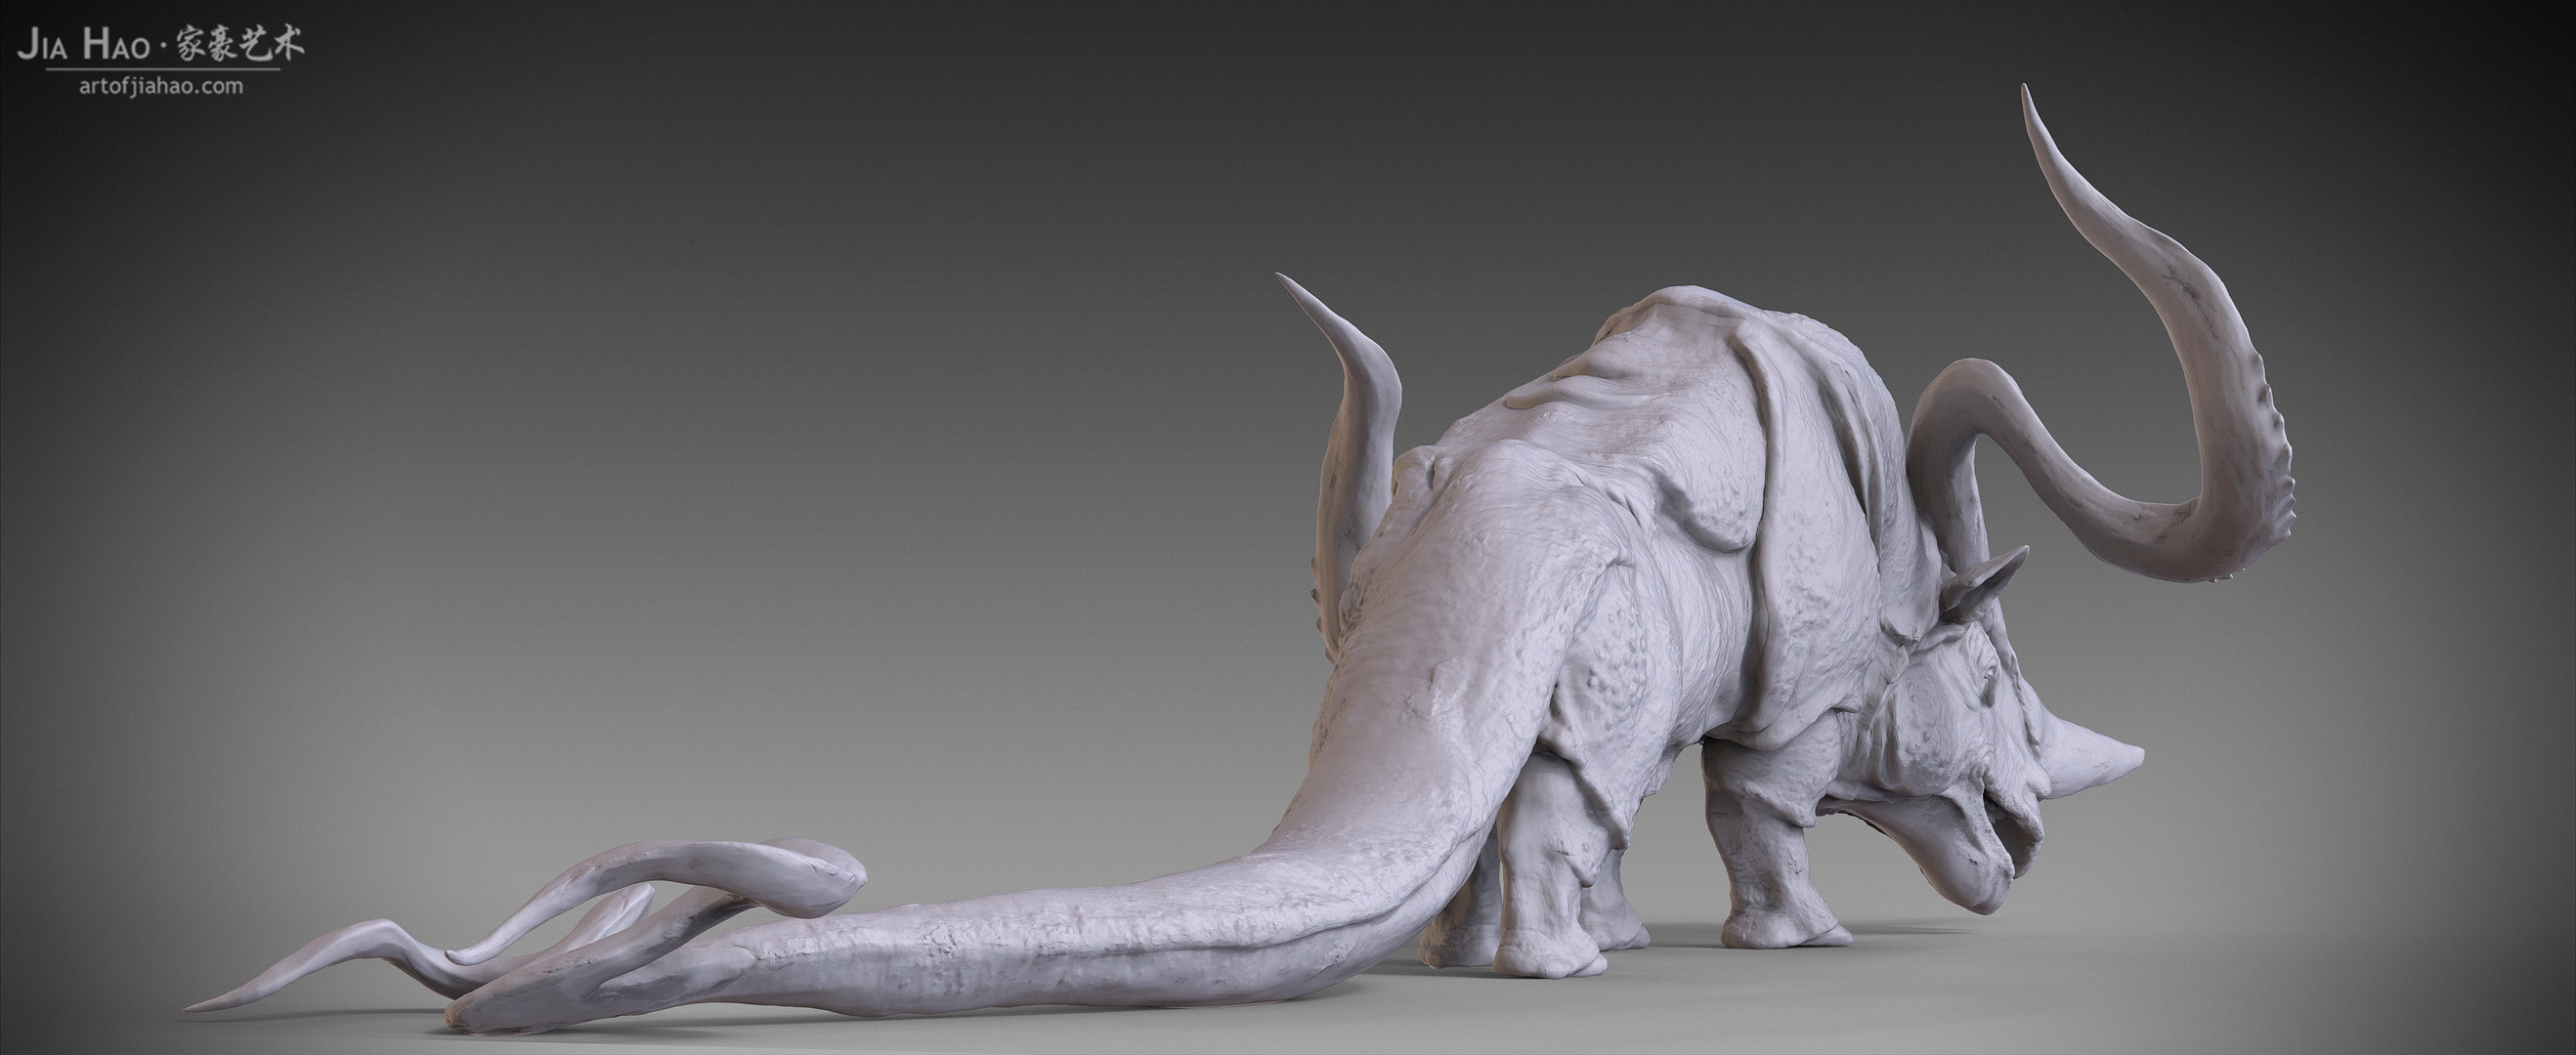 Rhihorn creature digital sculpture